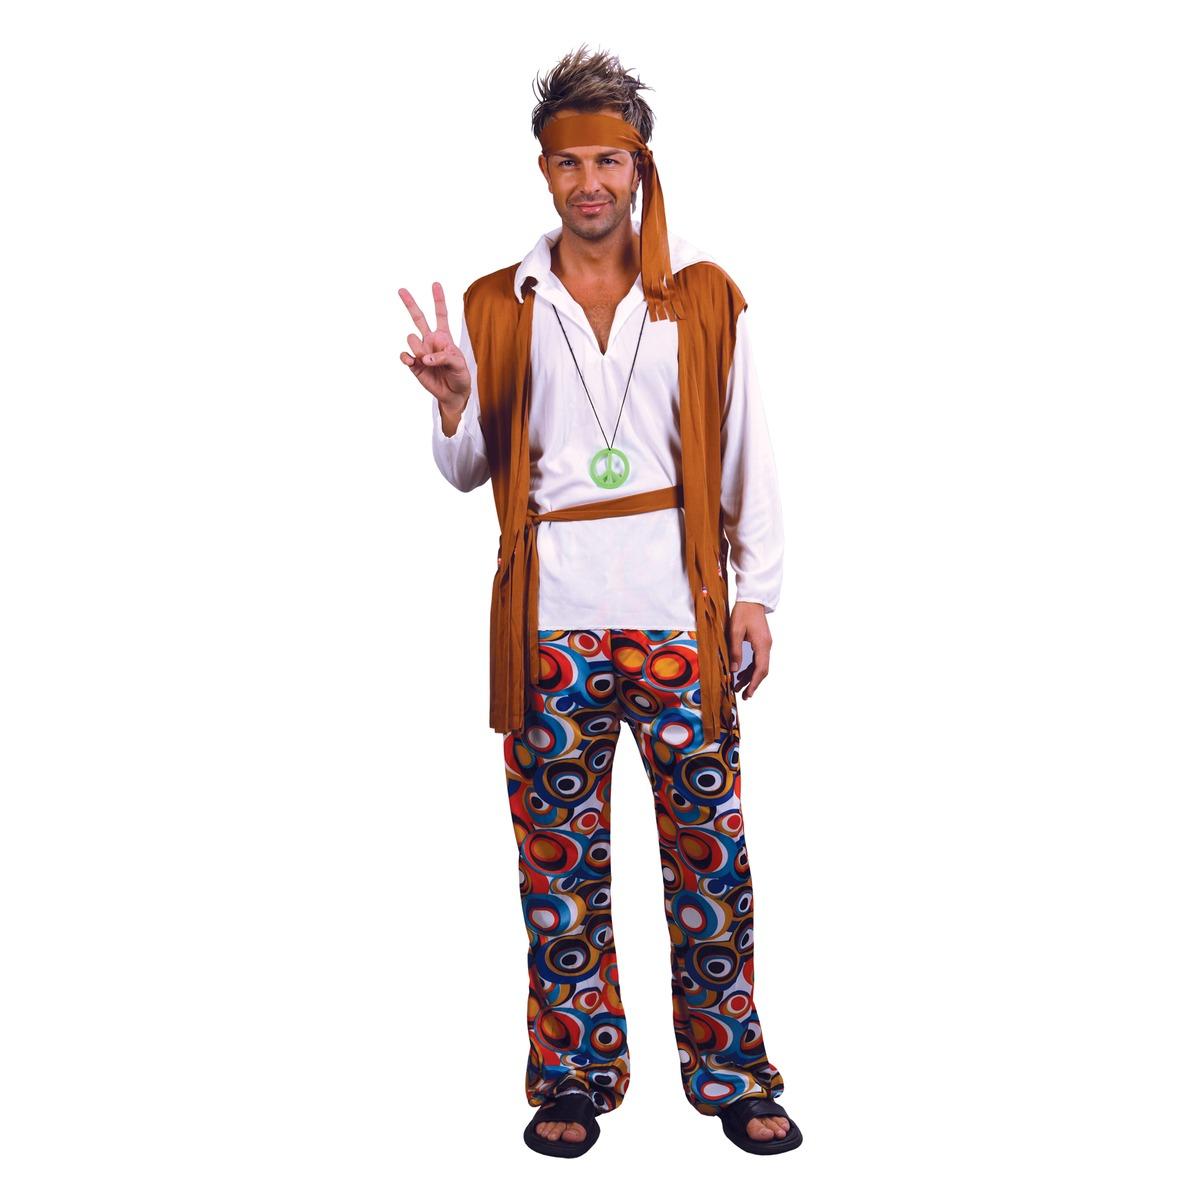 Déguisement homme hippie - Taille unique - Multicolore